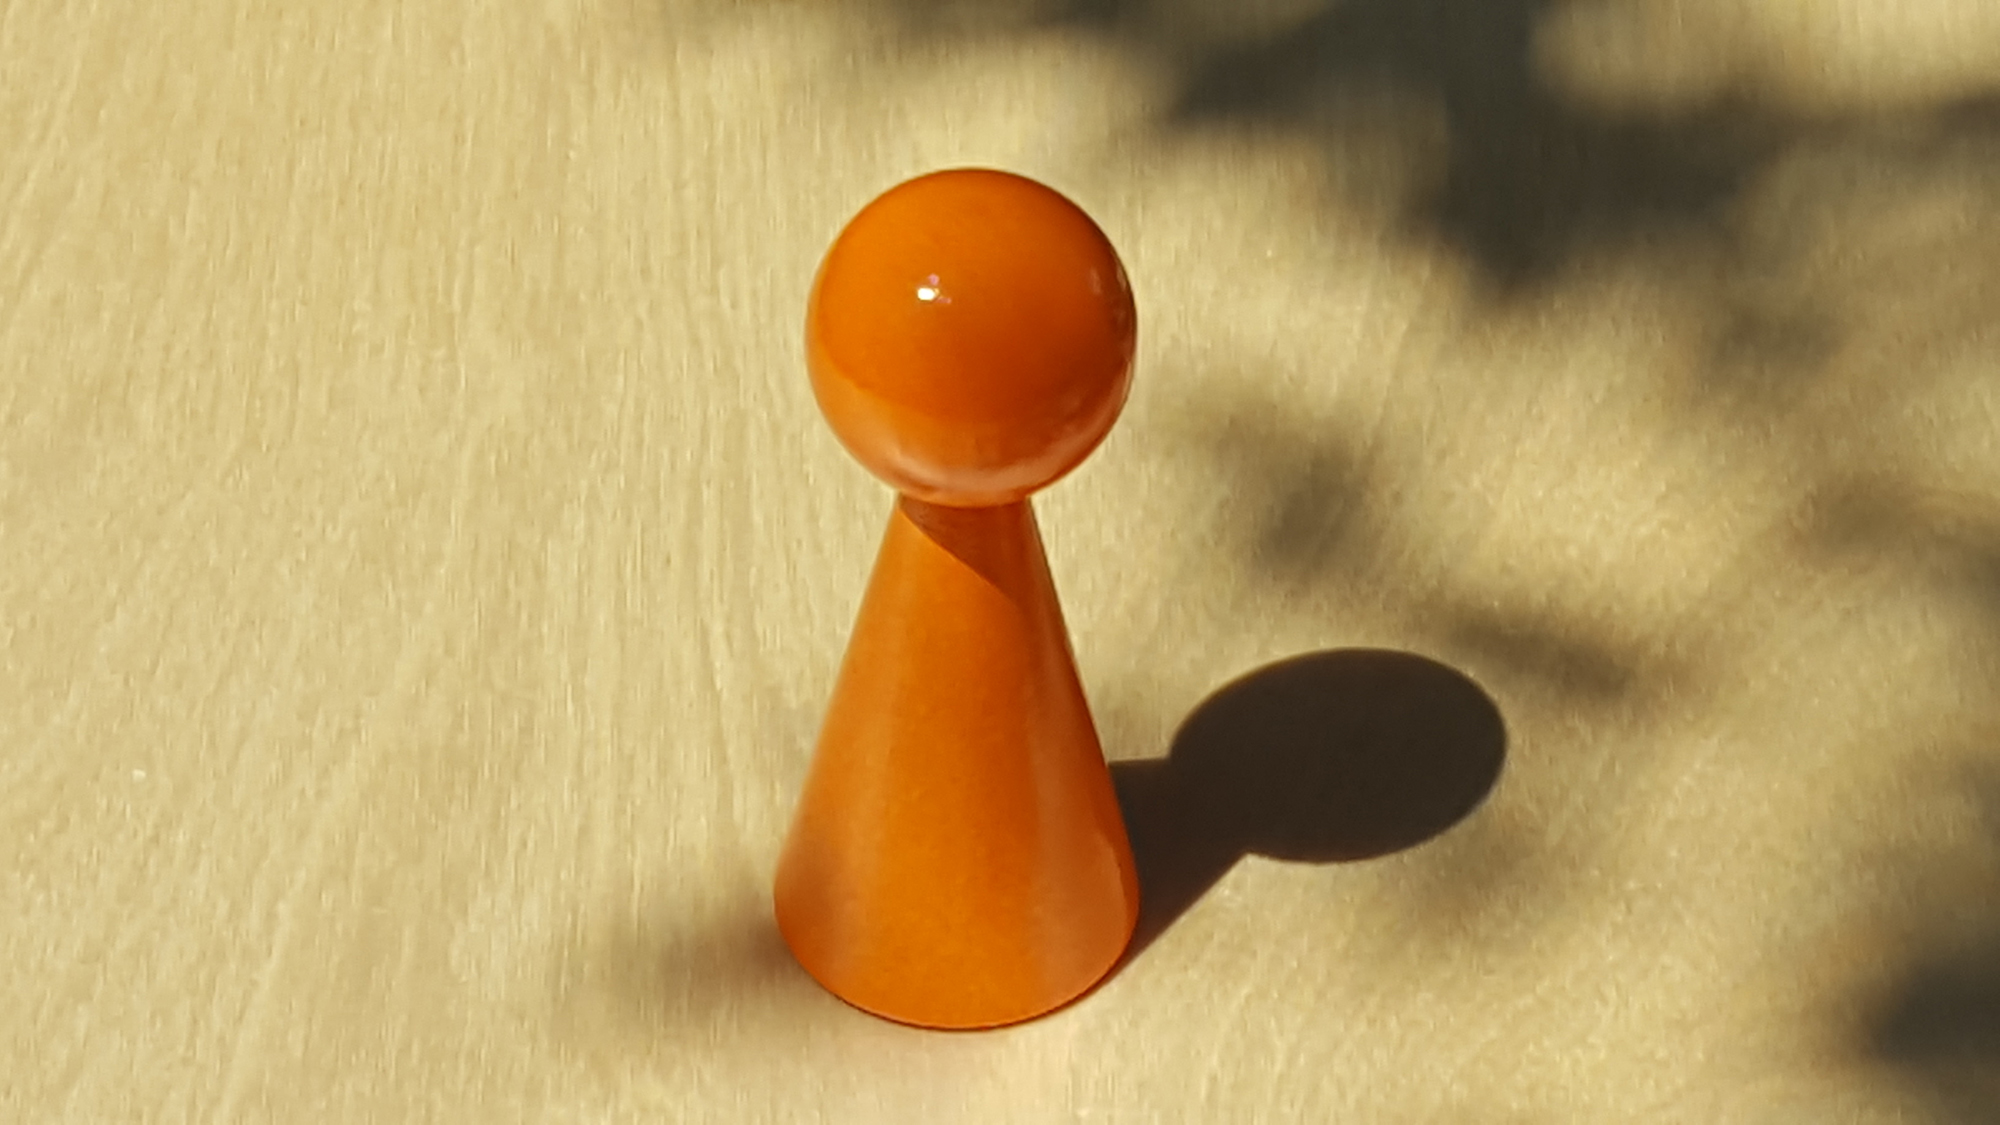 www.systembrett.at · Systembrett-Artikel · Einzel-Figur 10 cm in orange (ohne Augen);